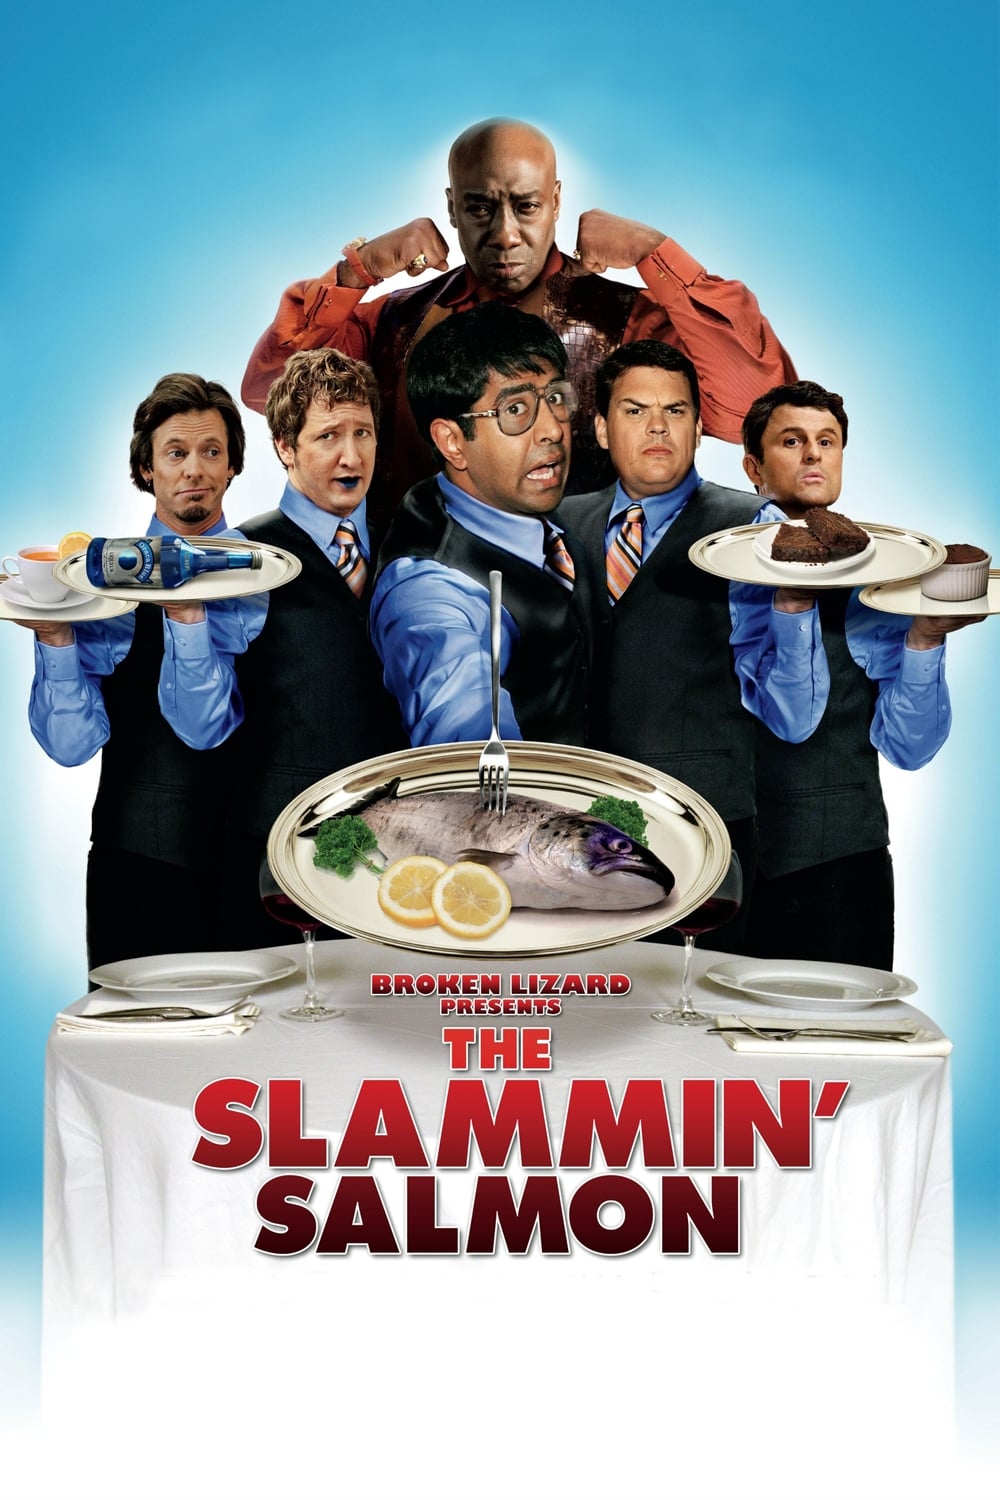 Slammin’ Salmon - Butter bei die Fische! (2009)